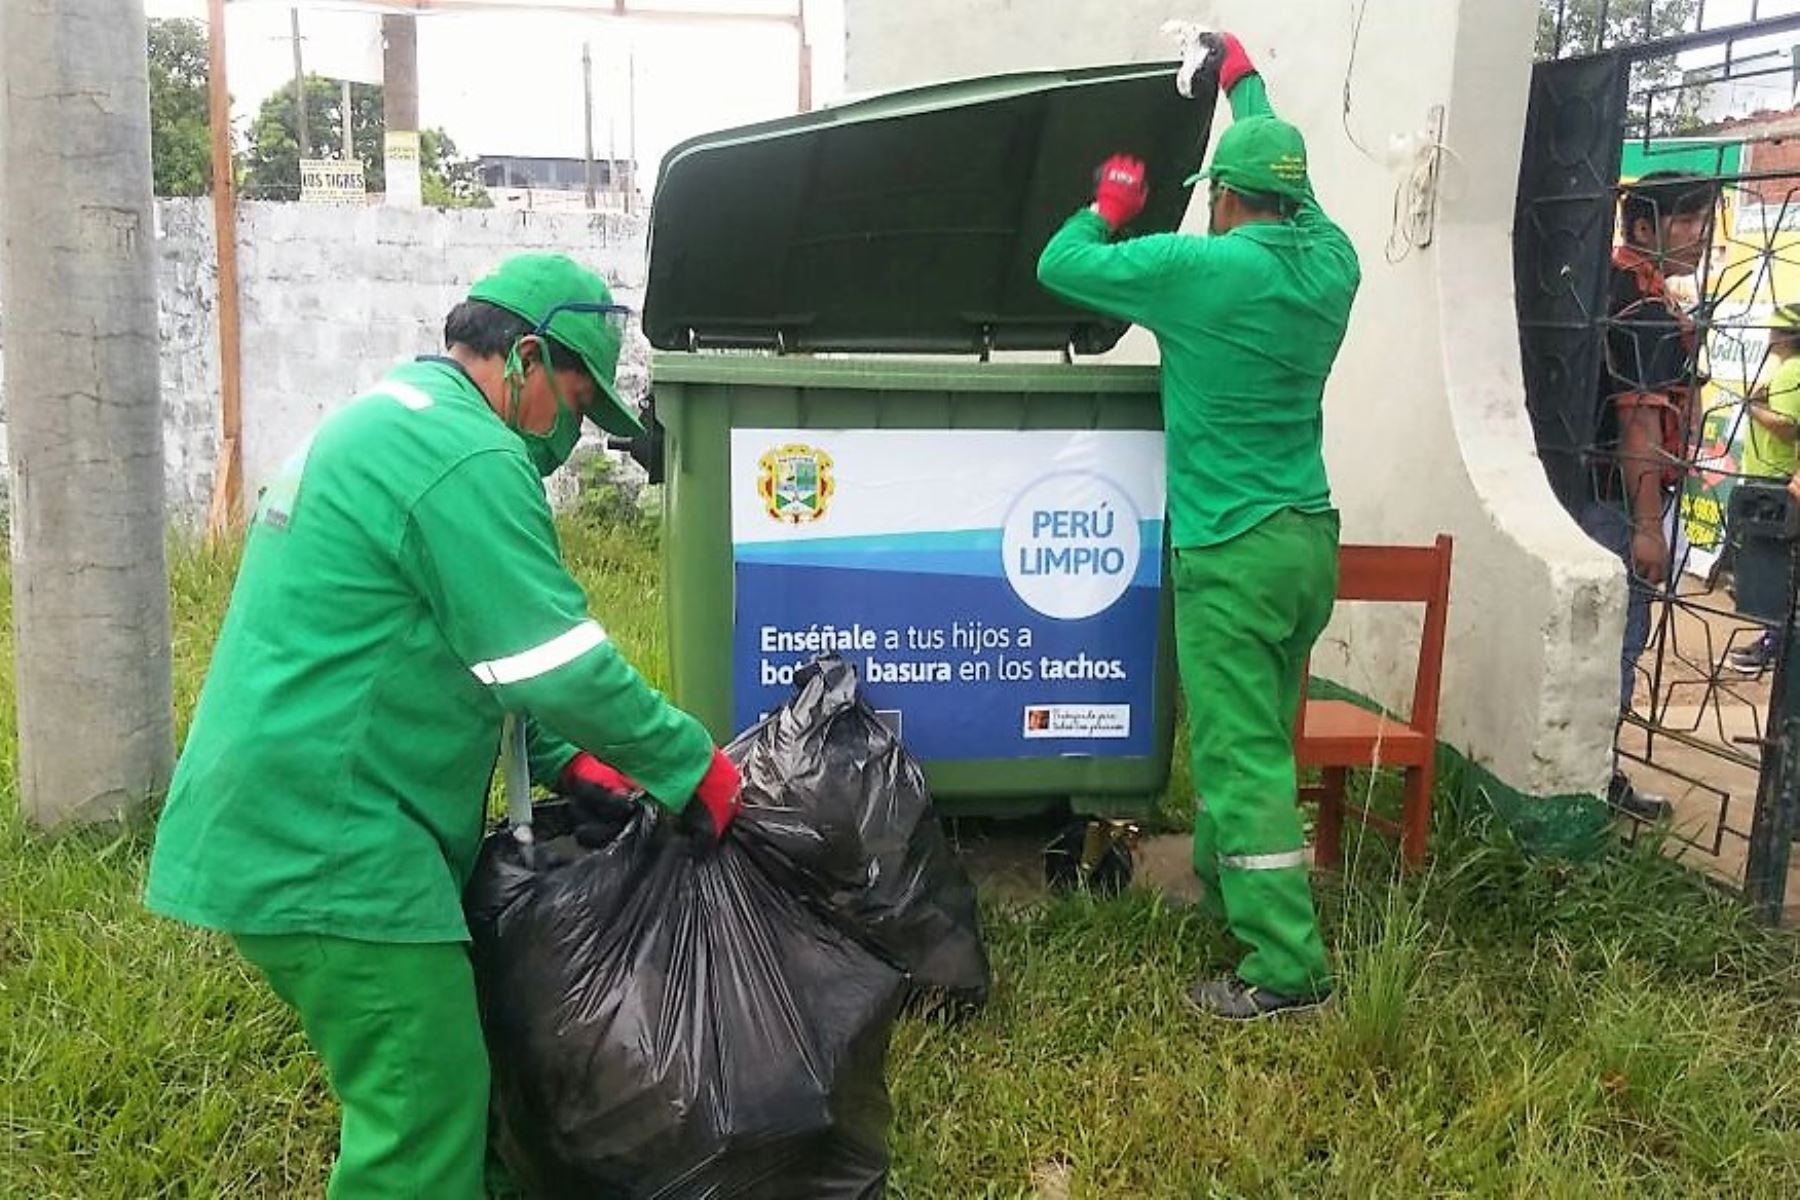 Campaña Perú Limpio recogió 13.3 toneladas de residuos en Puerto Maldonado luego de visita del Papa Francisco. ANDINA/Difusión